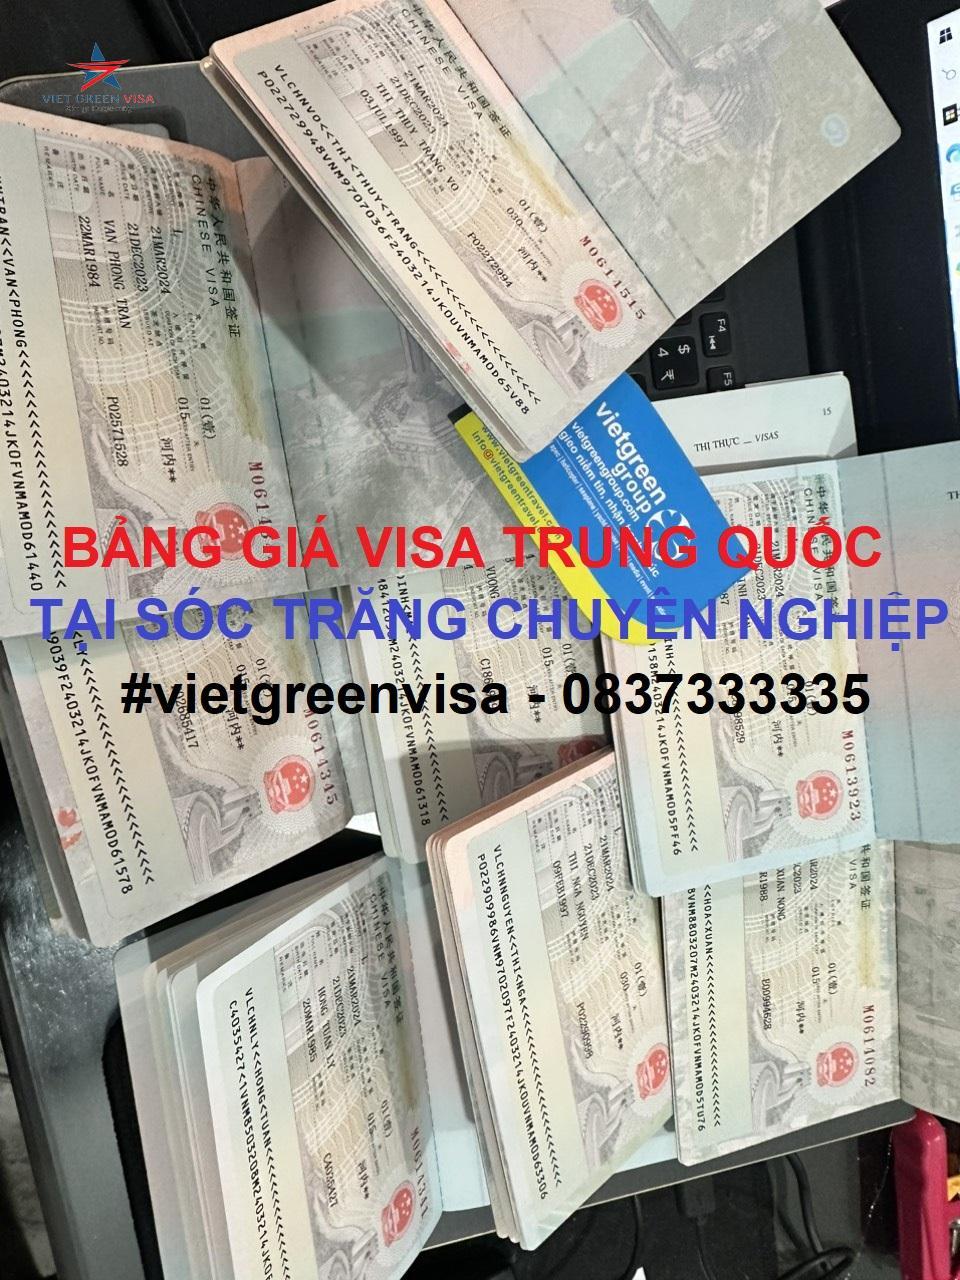 Dịch vụ xin visa Trung Quốc tại Sóc Trăng chuyên nghiệp